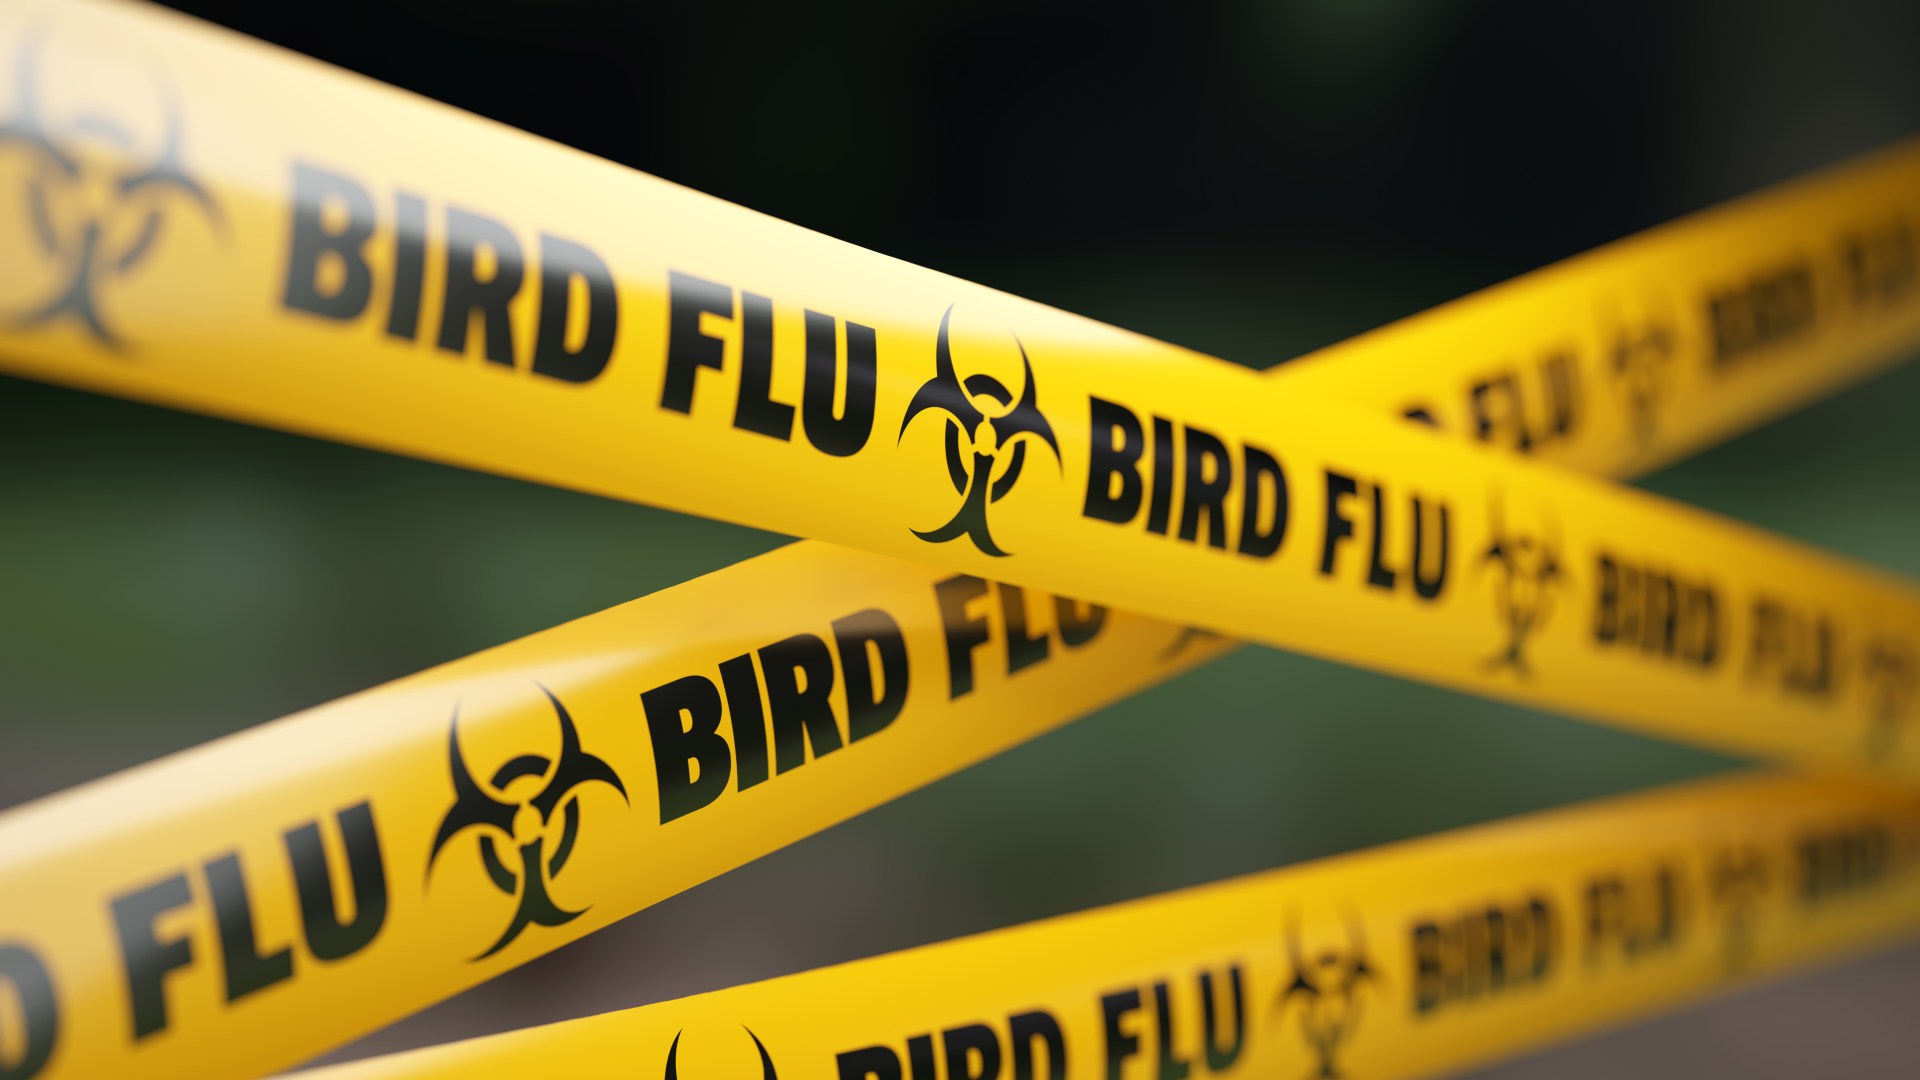 Estudiante de 21 años muere a causa de una cepa de gripe aviar en el Reino Unido y EE. UU. días después de notar una nueva tos